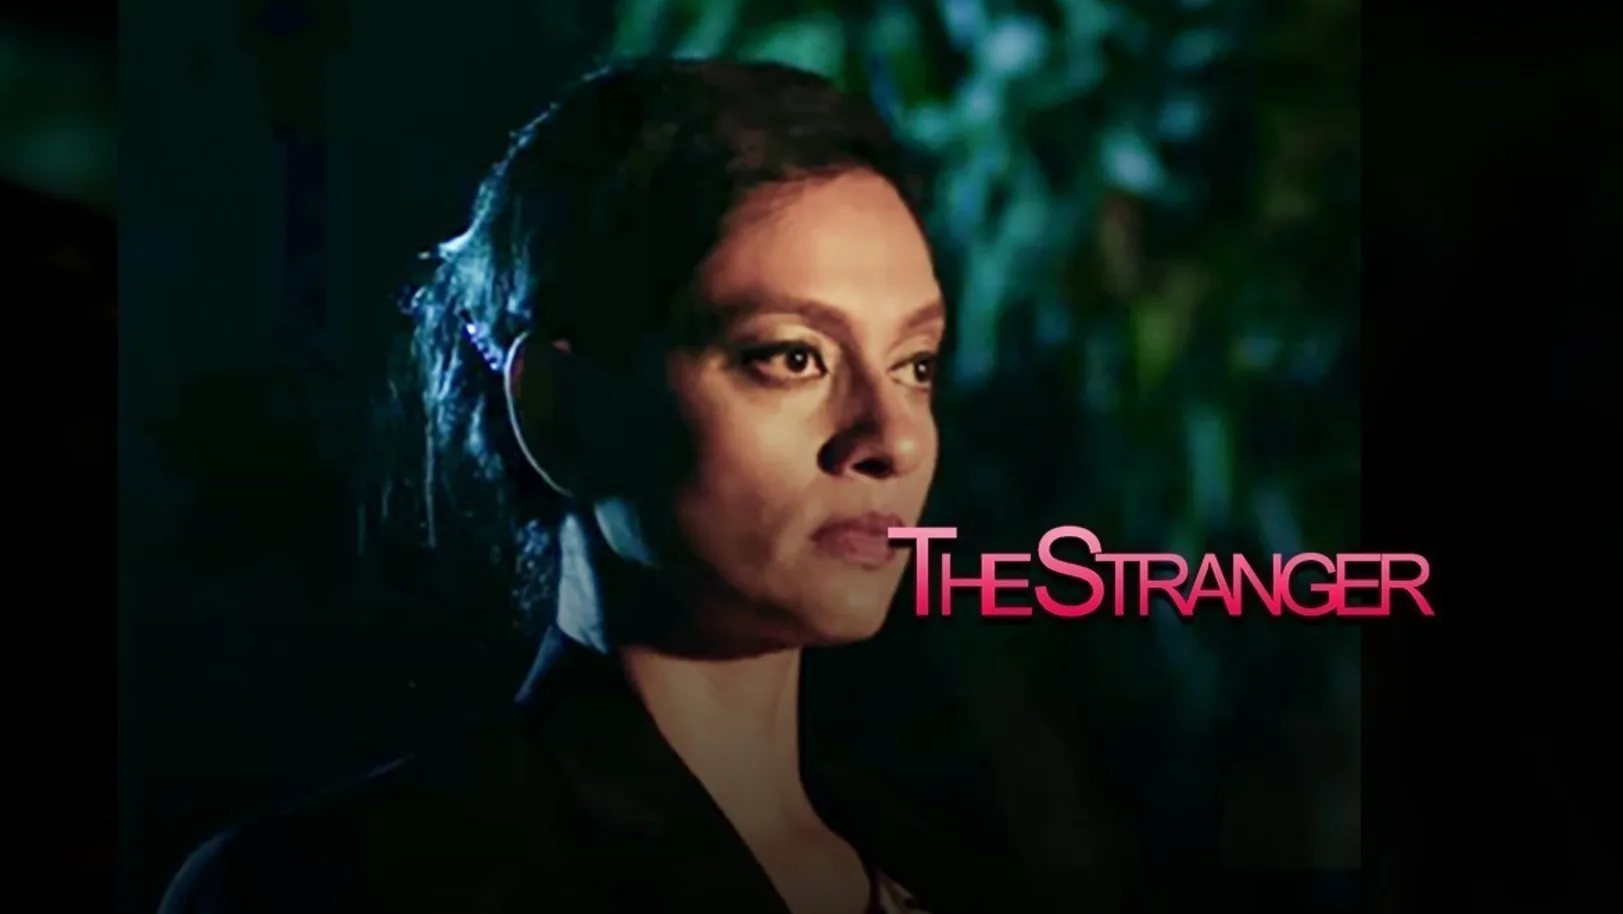 The Stranger Movie